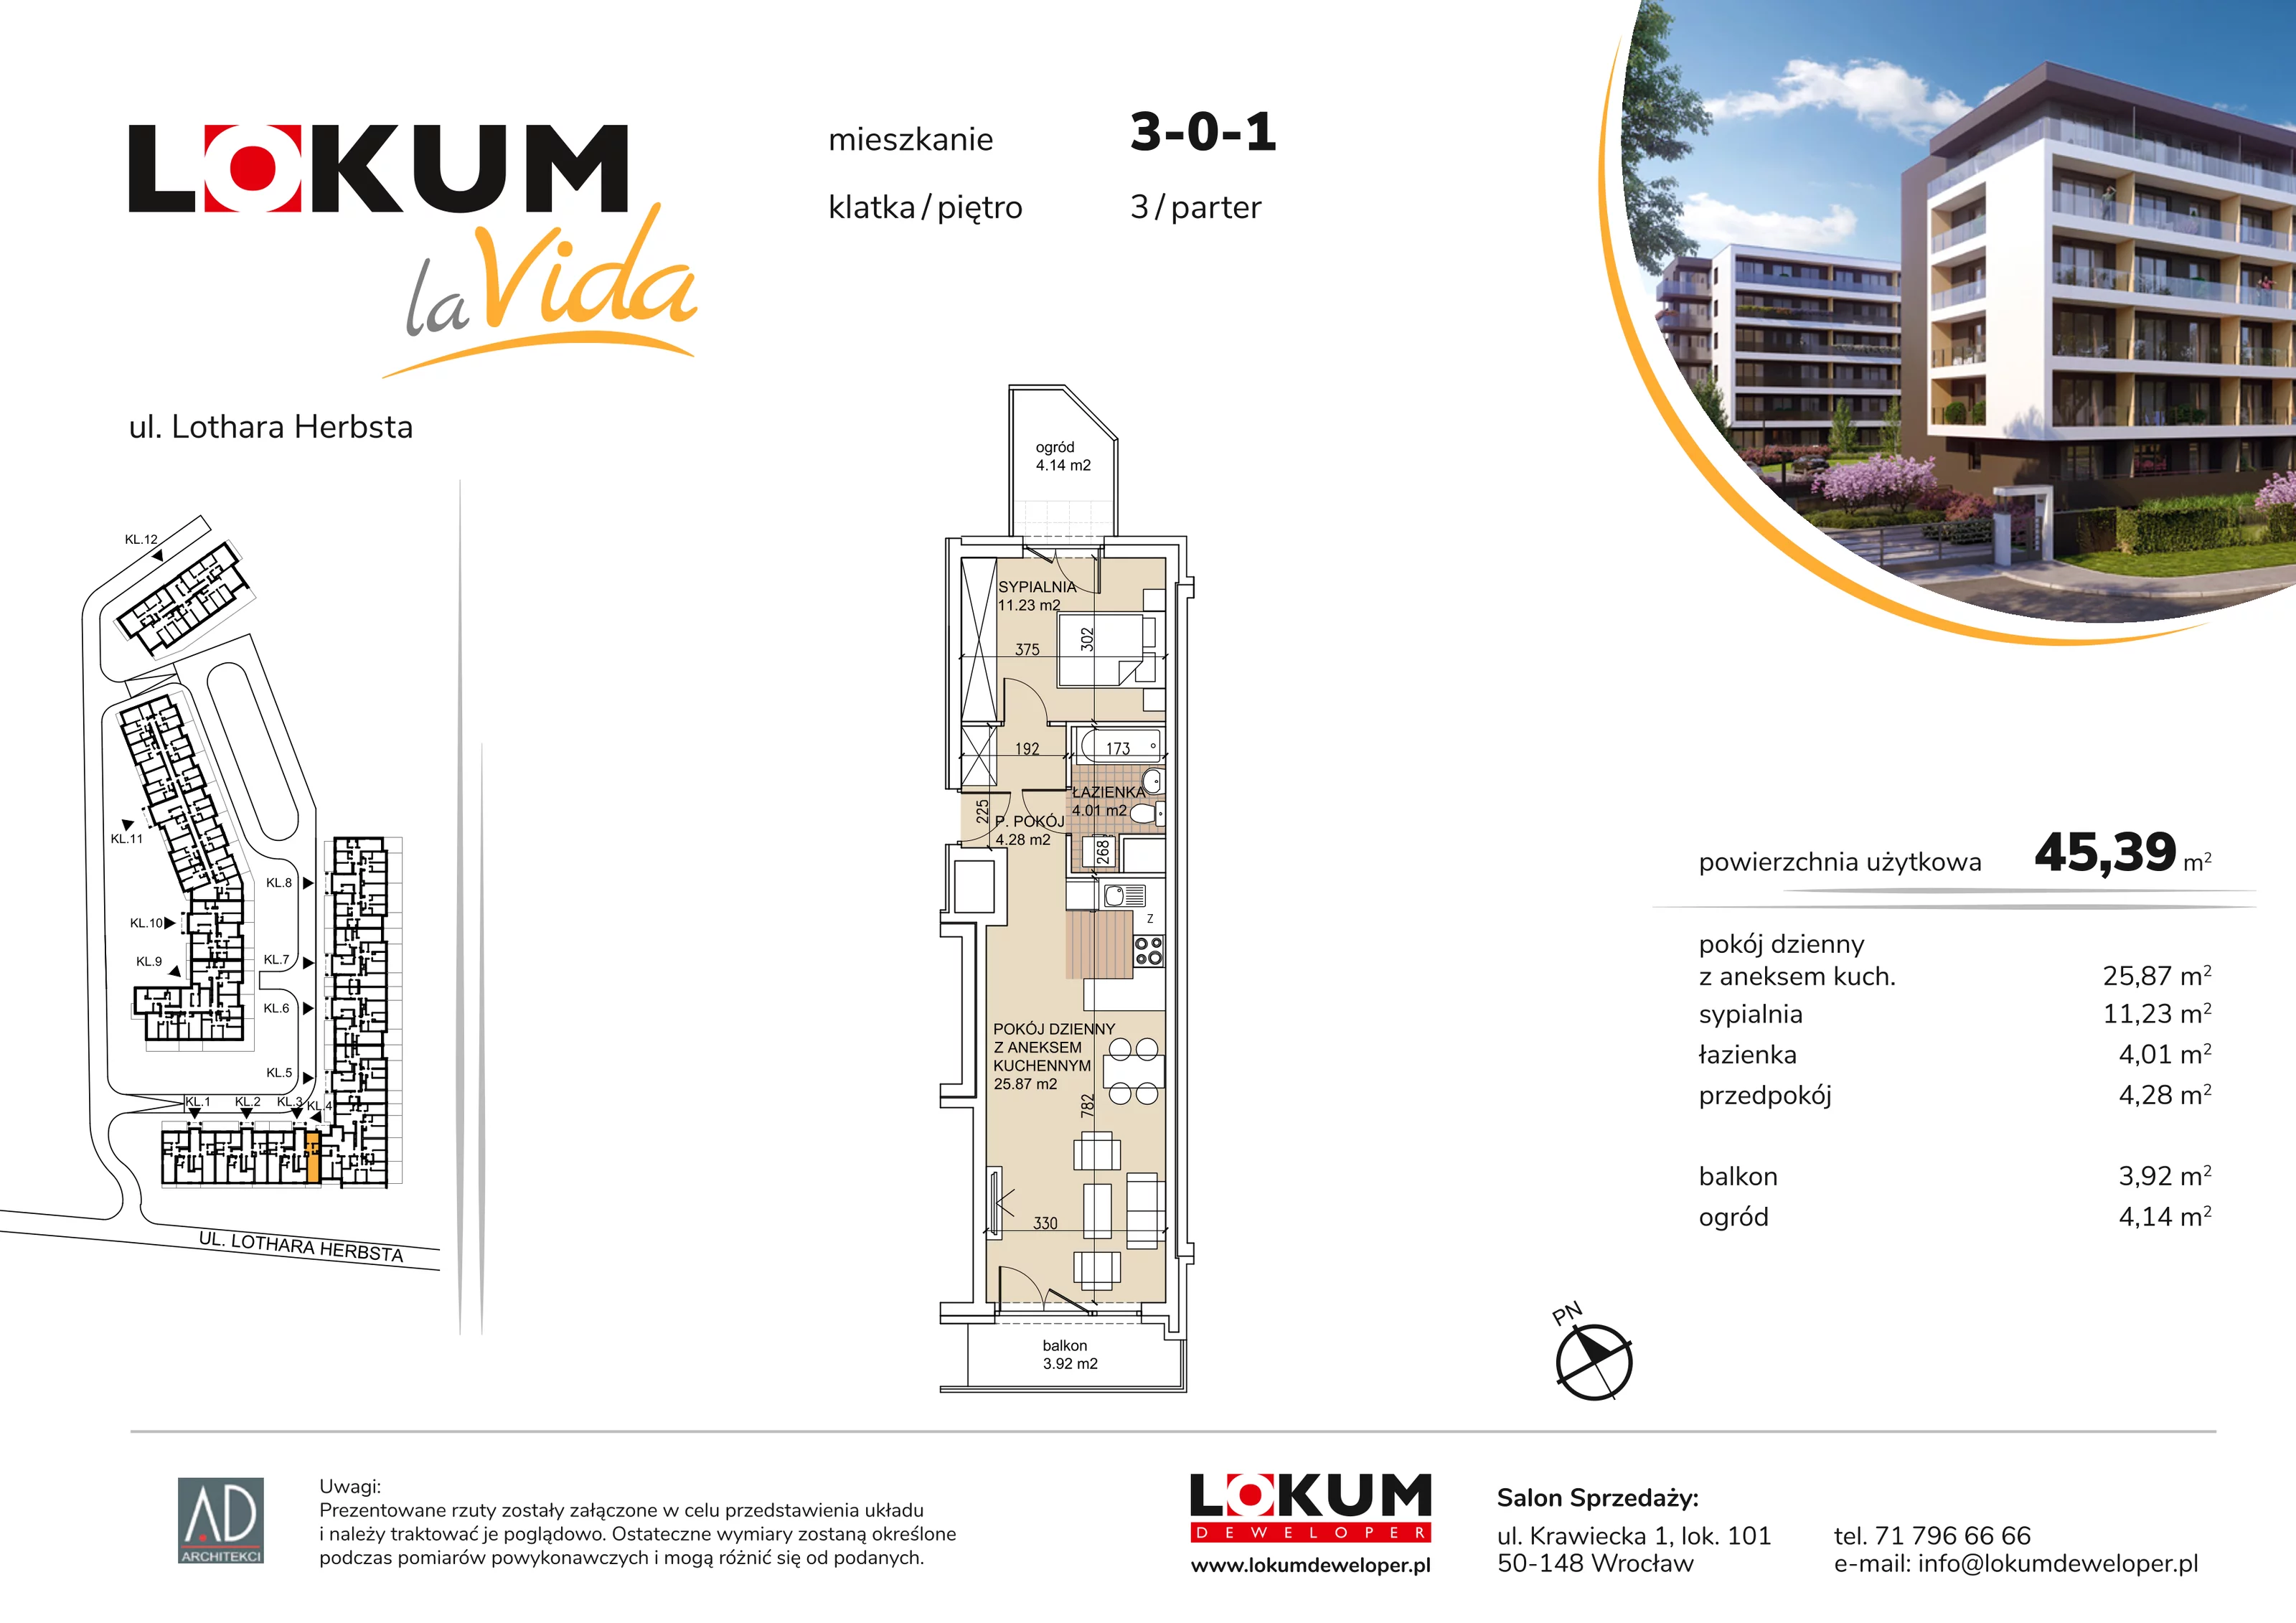 Mieszkanie 45,39 m², parter, oferta nr 3-0-1, Lokum la Vida, Wrocław, Sołtysowice, ul. Lothara Herbsta